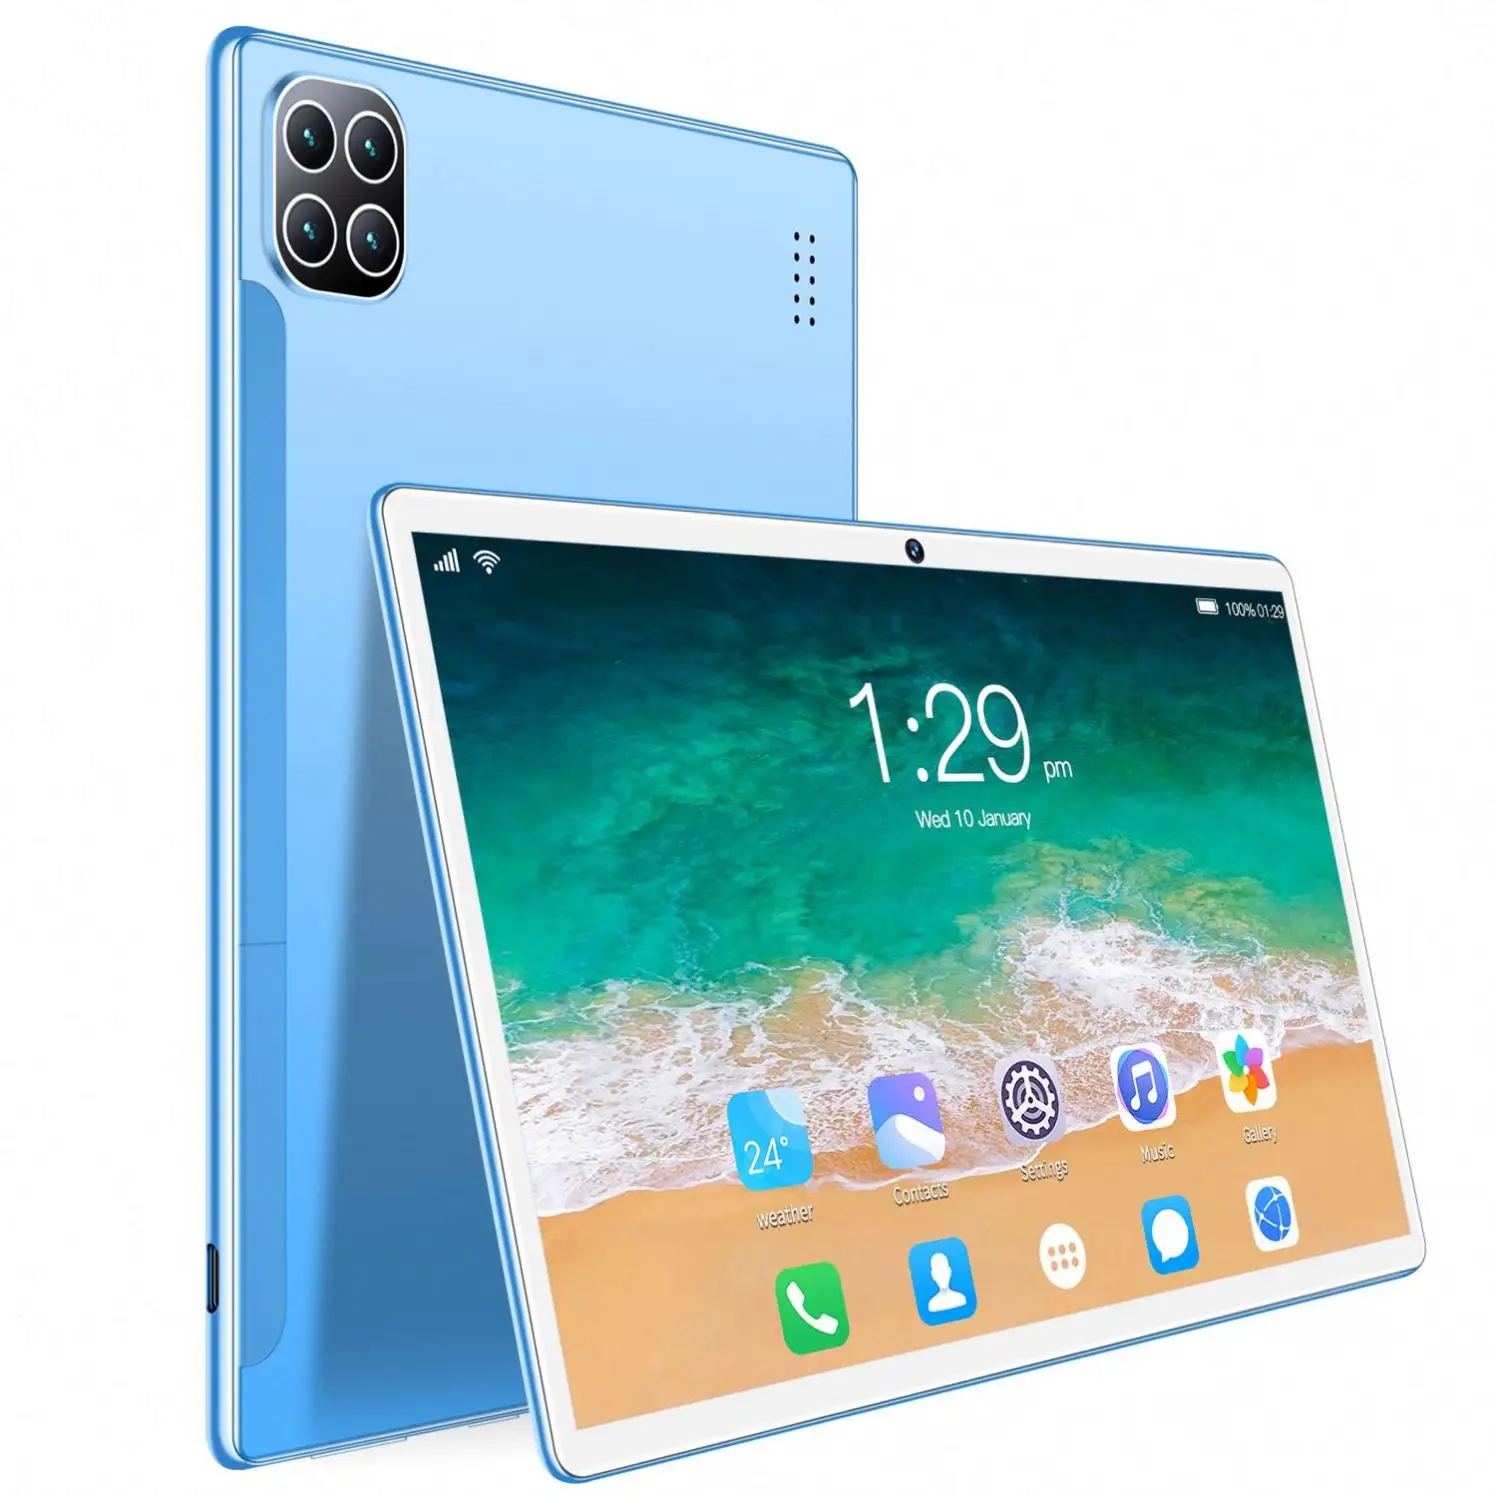 8.0 pouces 2GB + 32GB octa core 4G tablettes Android10.0 tablette écran IPS WiFi BT GPS Multi Touch G capteur au meilleur prix